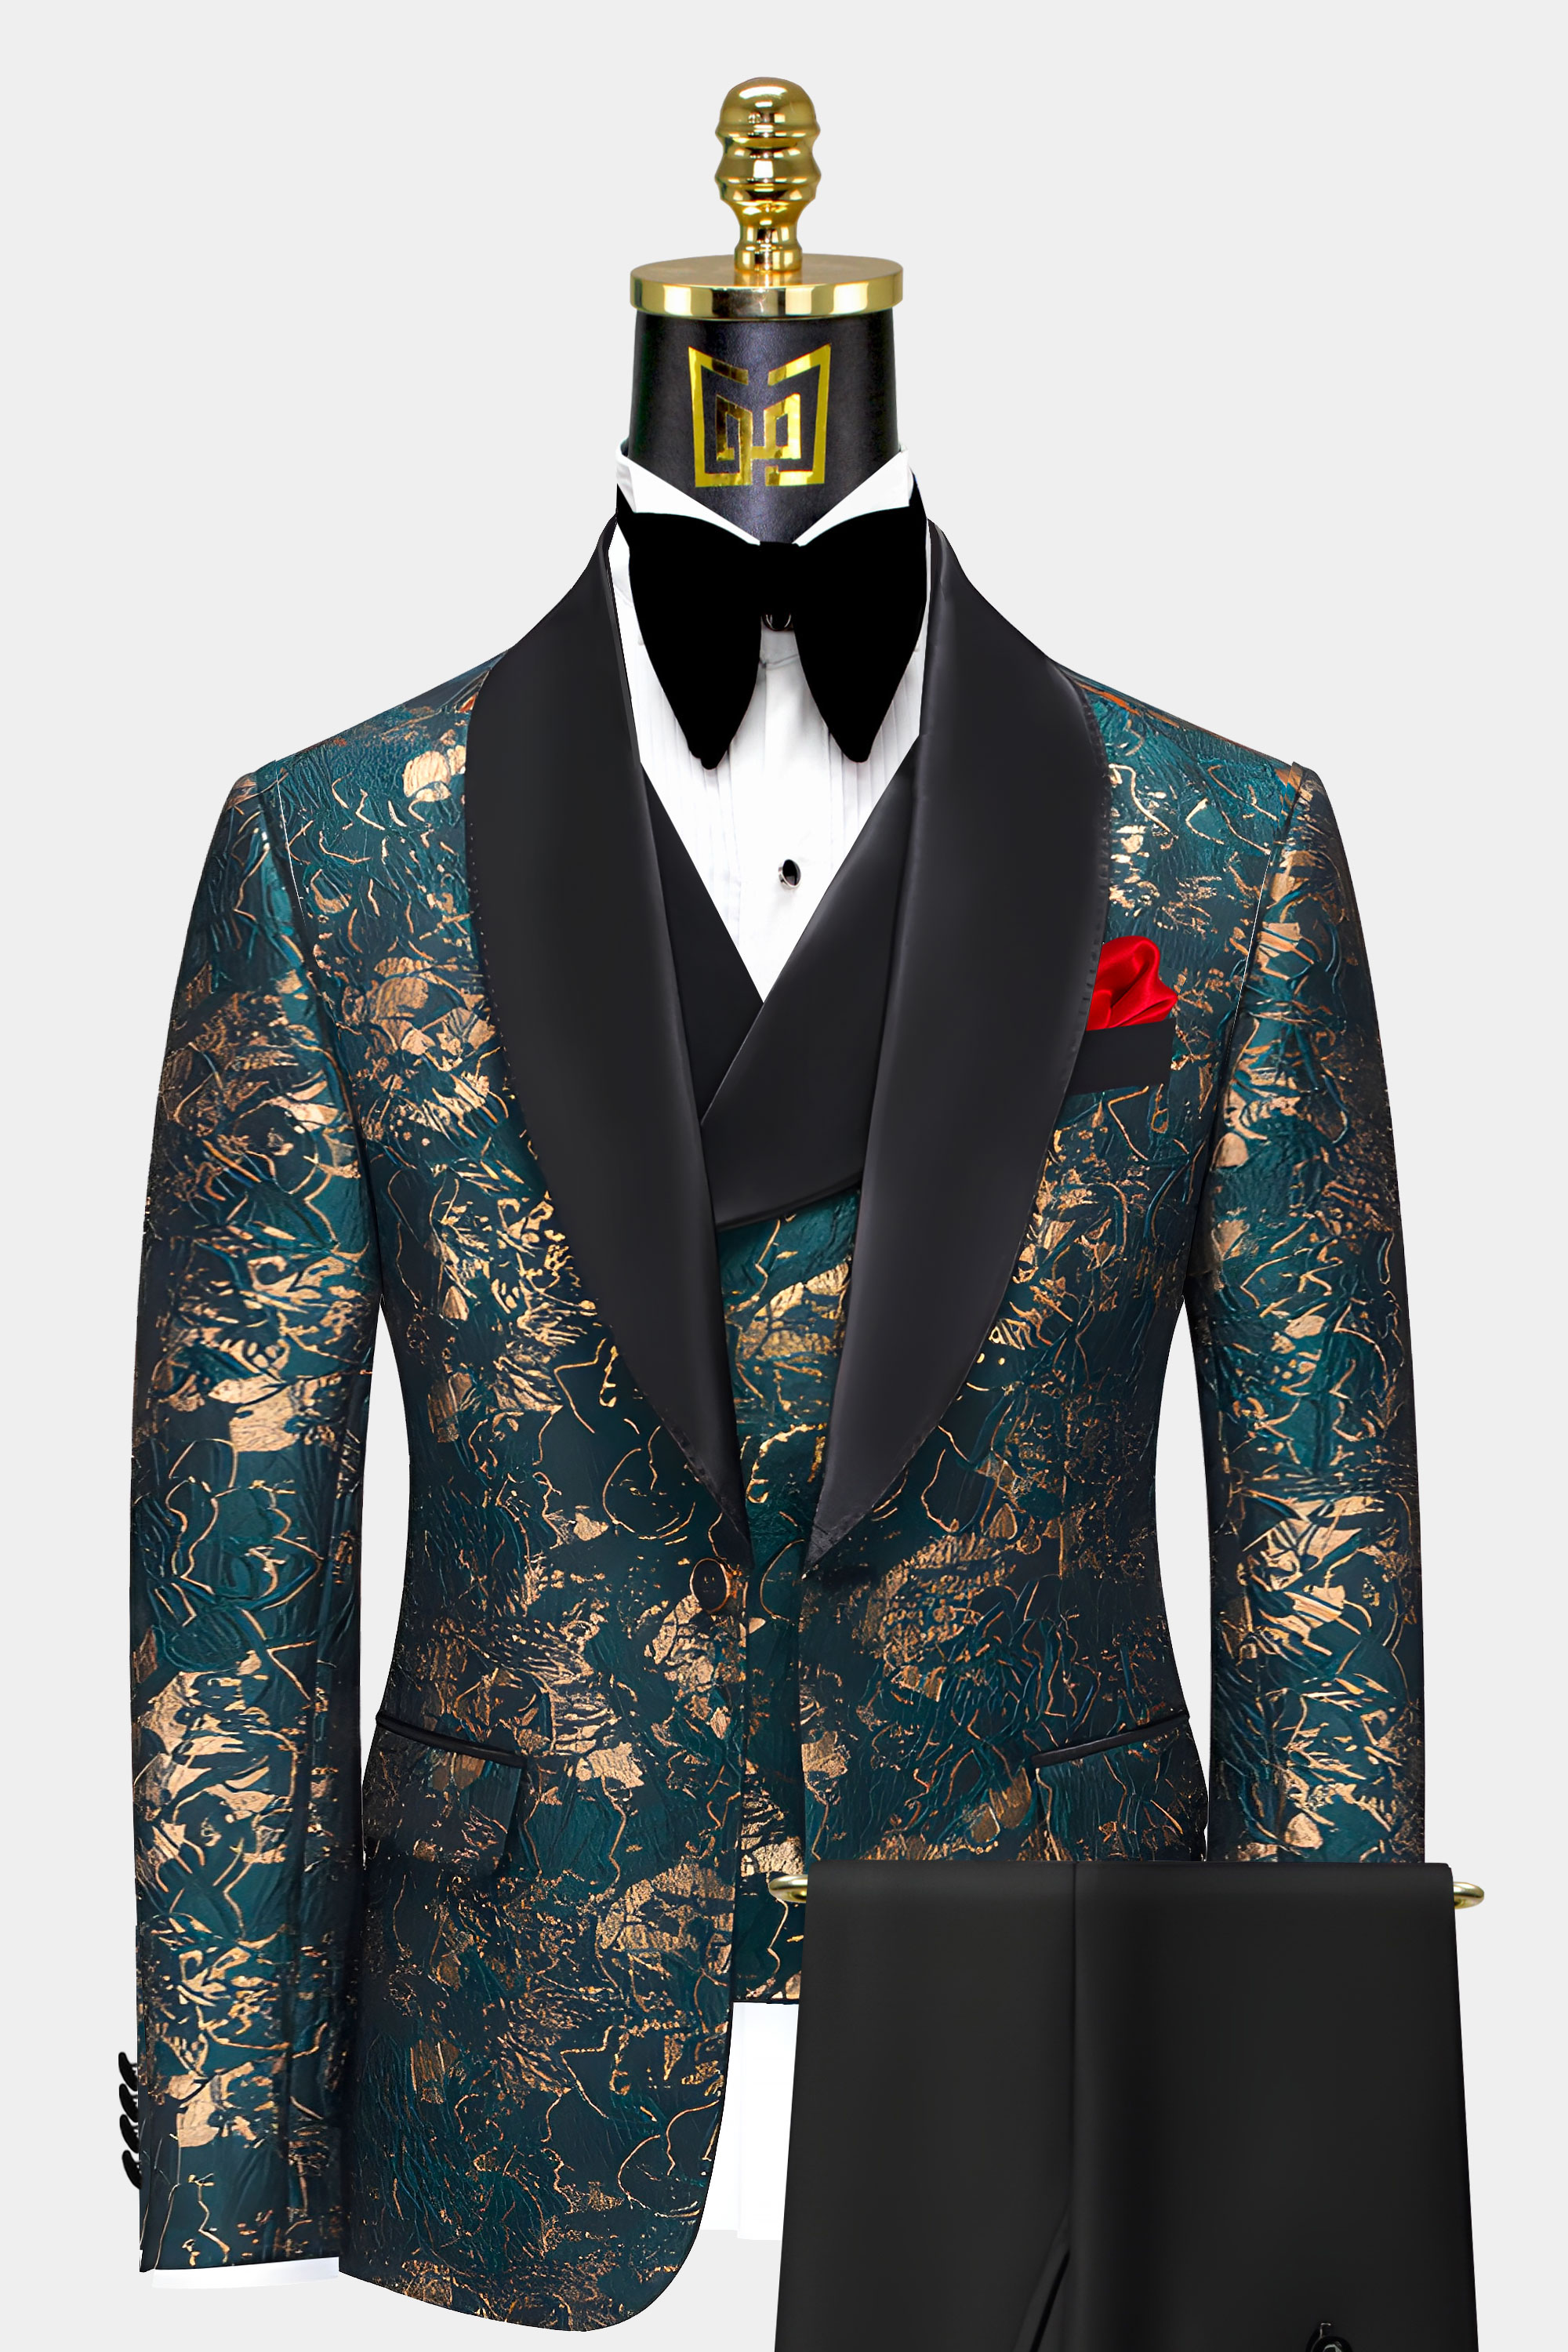 Black-Pants-Teal-and-Gold-Tuxedo-Weddinbg-Suit-for-Prom-from-Gentlemansguru.com